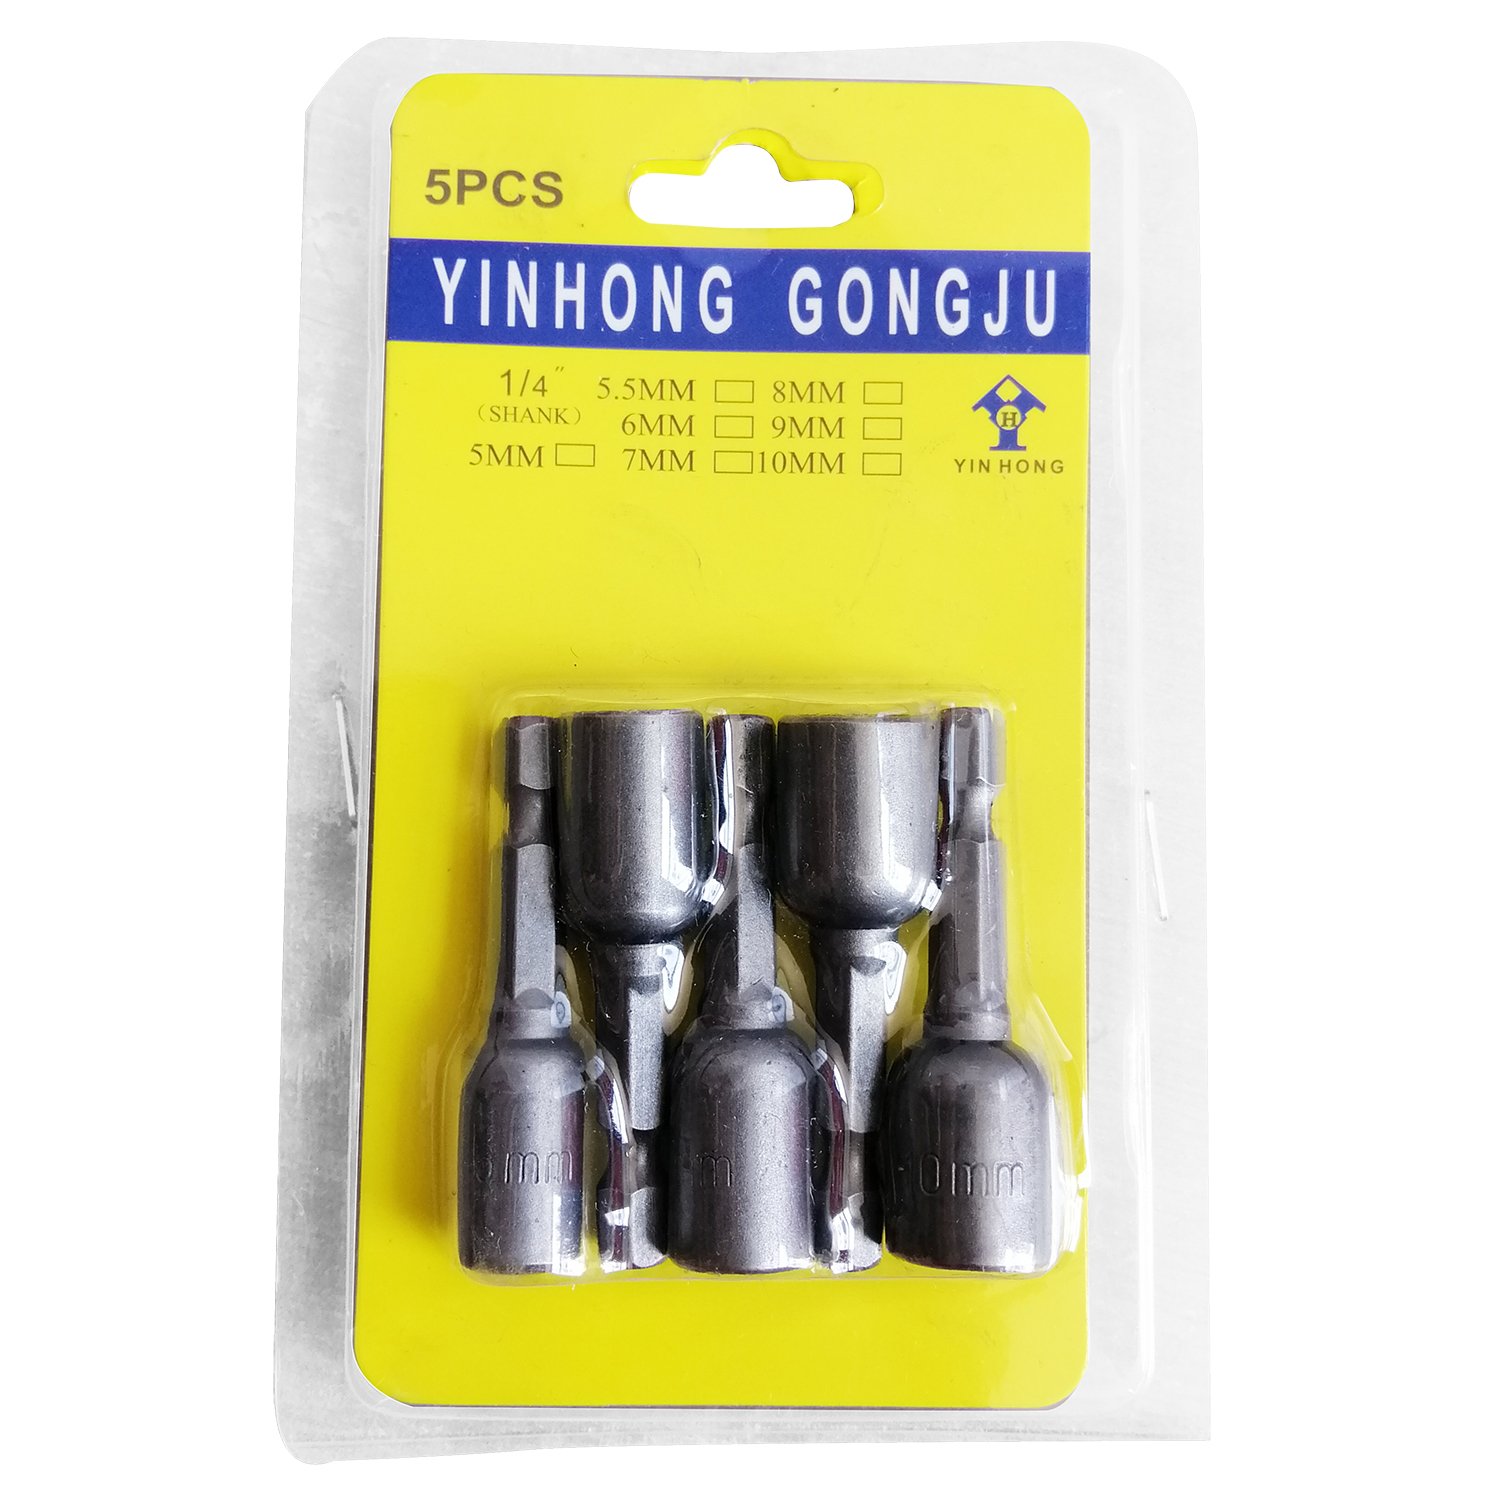 YINHONG GONGJU ชุดลูกบล๊อคสวมเร็วแกนหกเหลี่ยมสำหรับขันสกรูใช้กับสว่านไฟฟ้า ขนาด 6-10 มม.